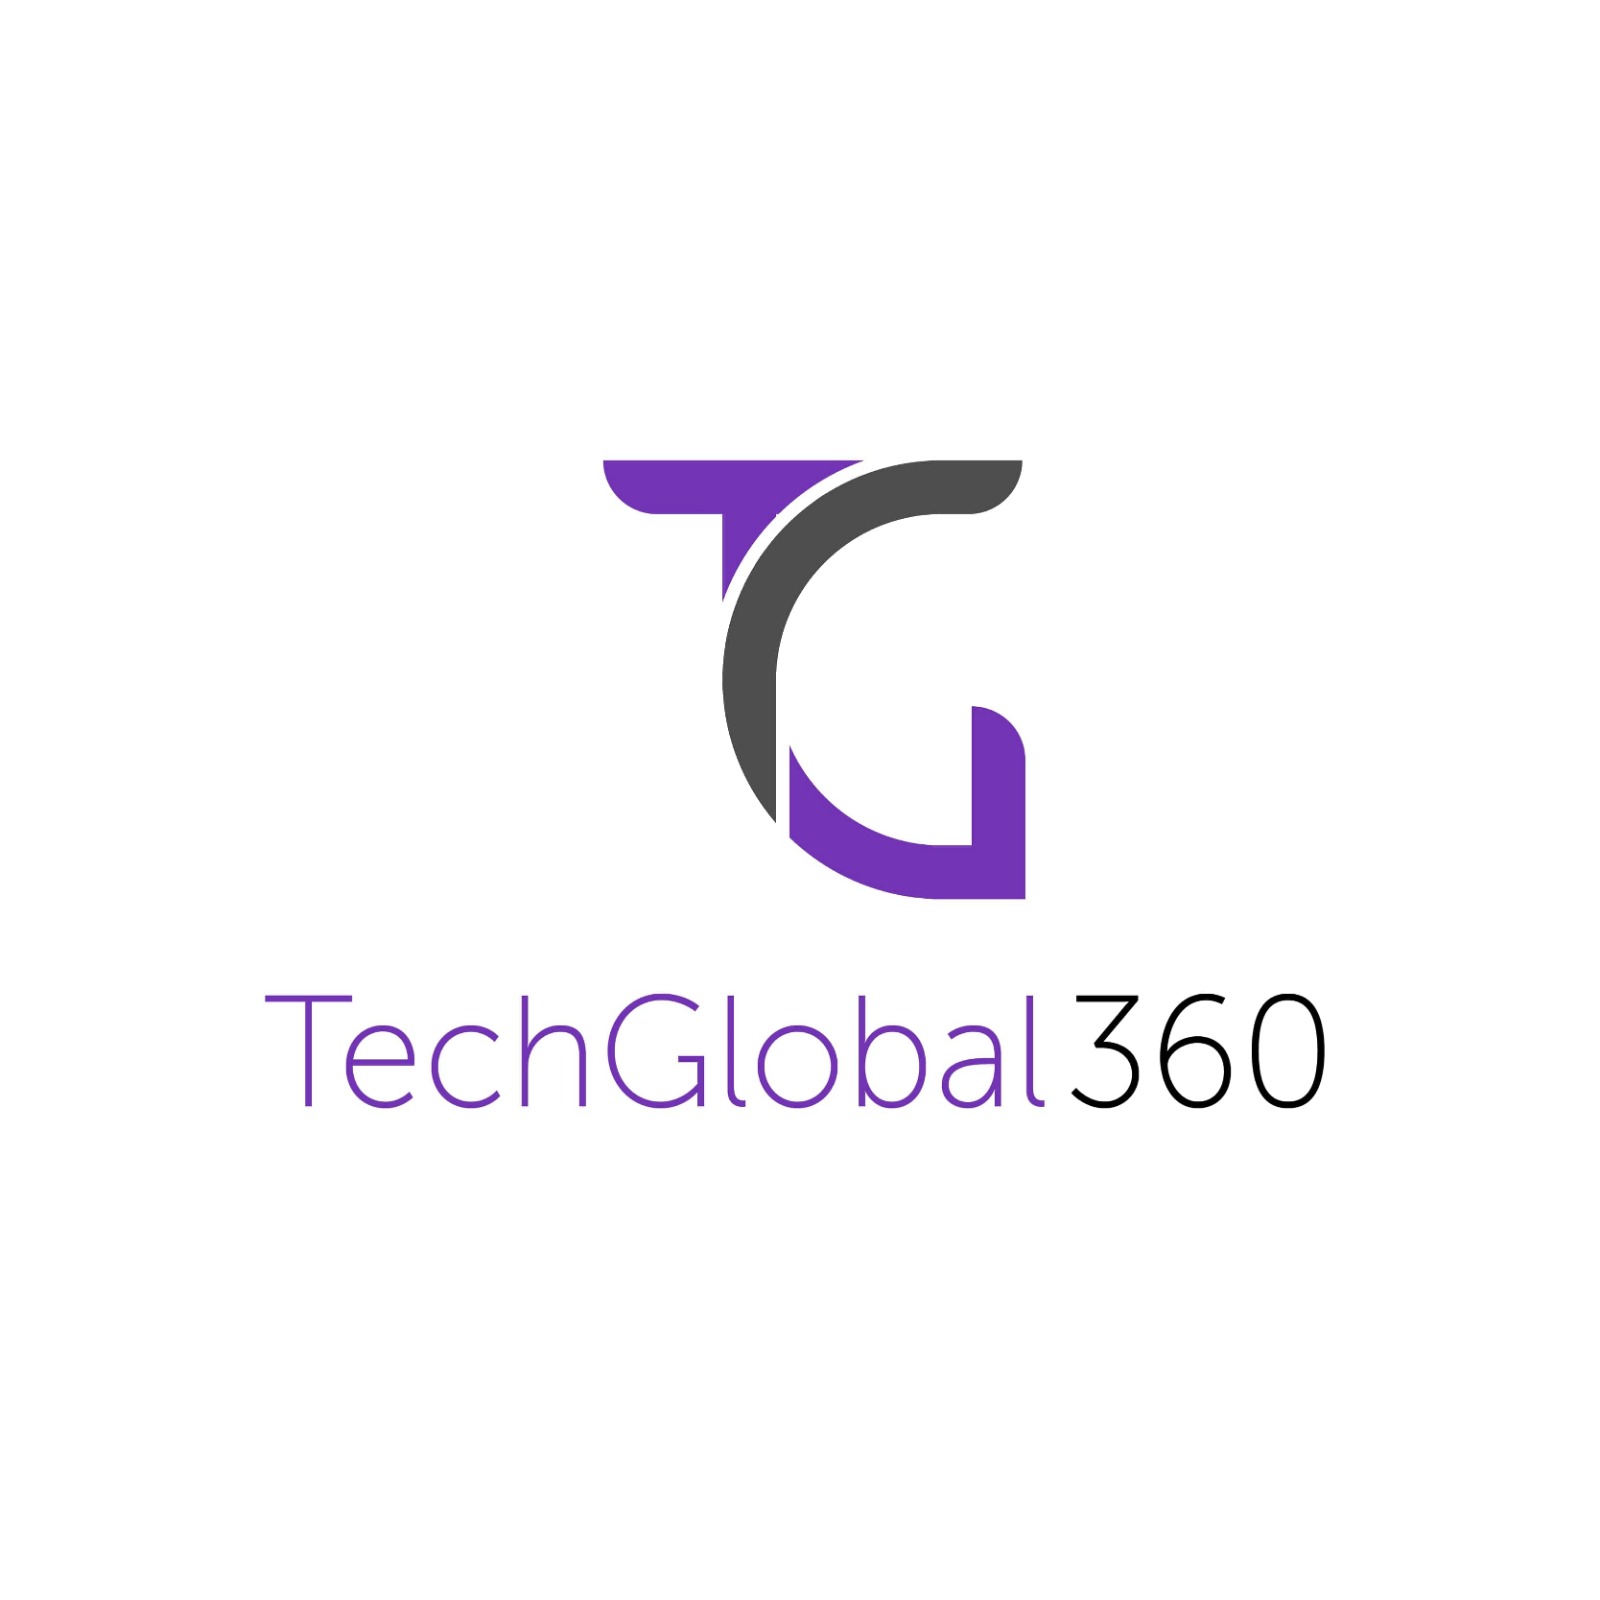 Techno global